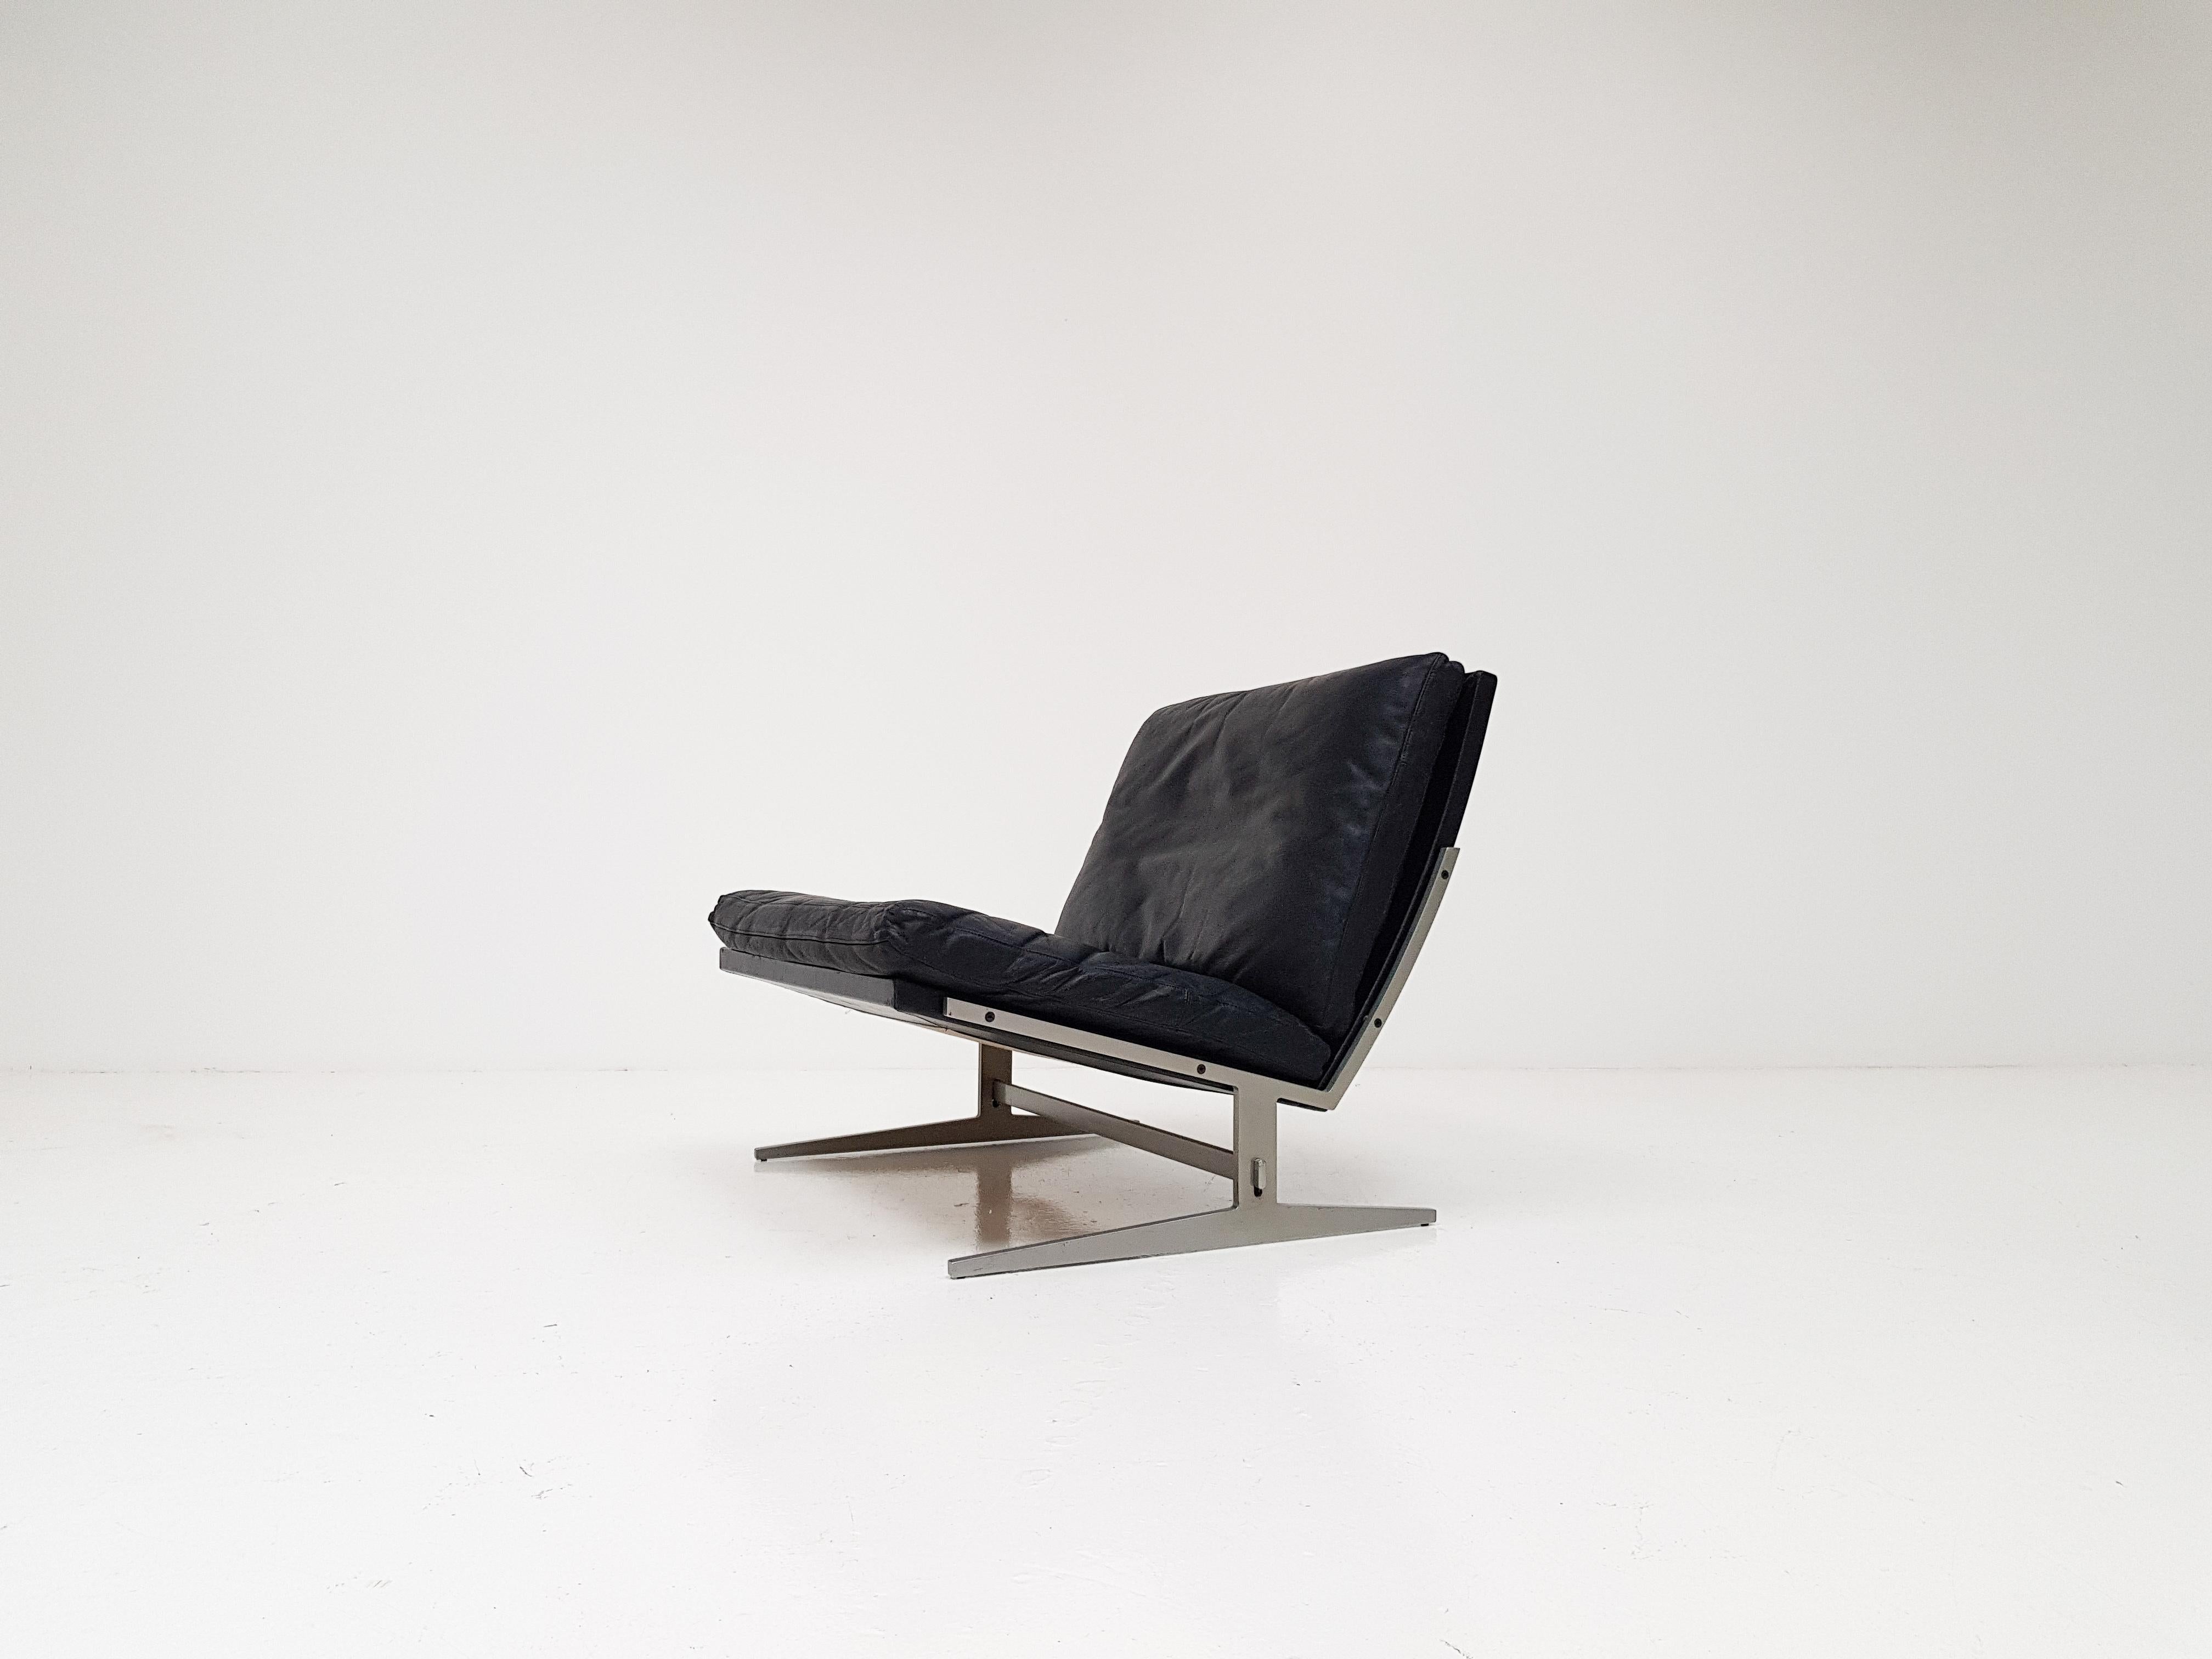 Jørgen Kastholm & Preben Fabricius Black Leather Easy Chair, Model Bo-561, 1962 (20. Jahrhundert)